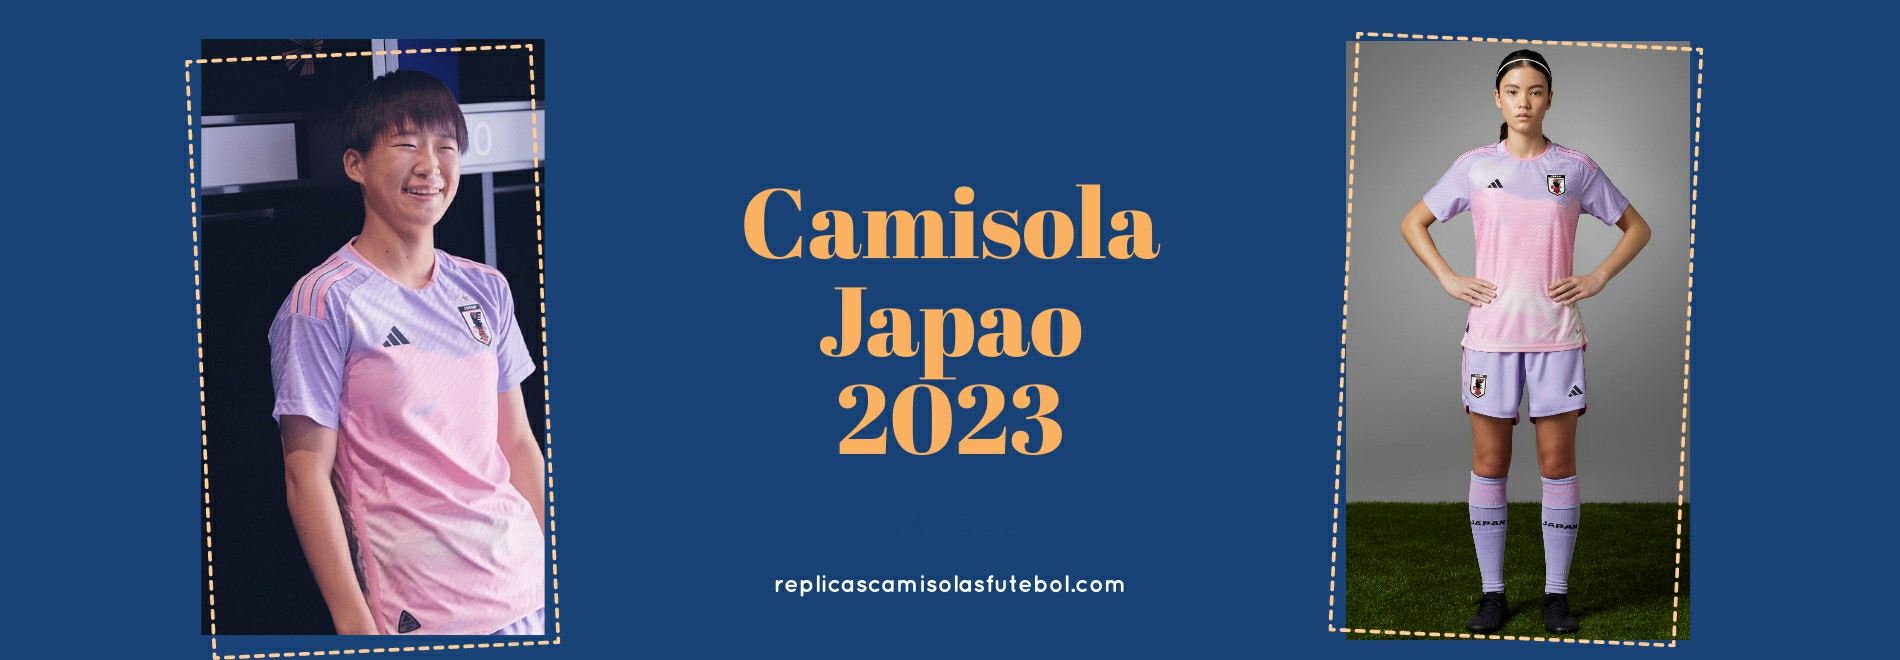 Camisola Japao 2023-2024